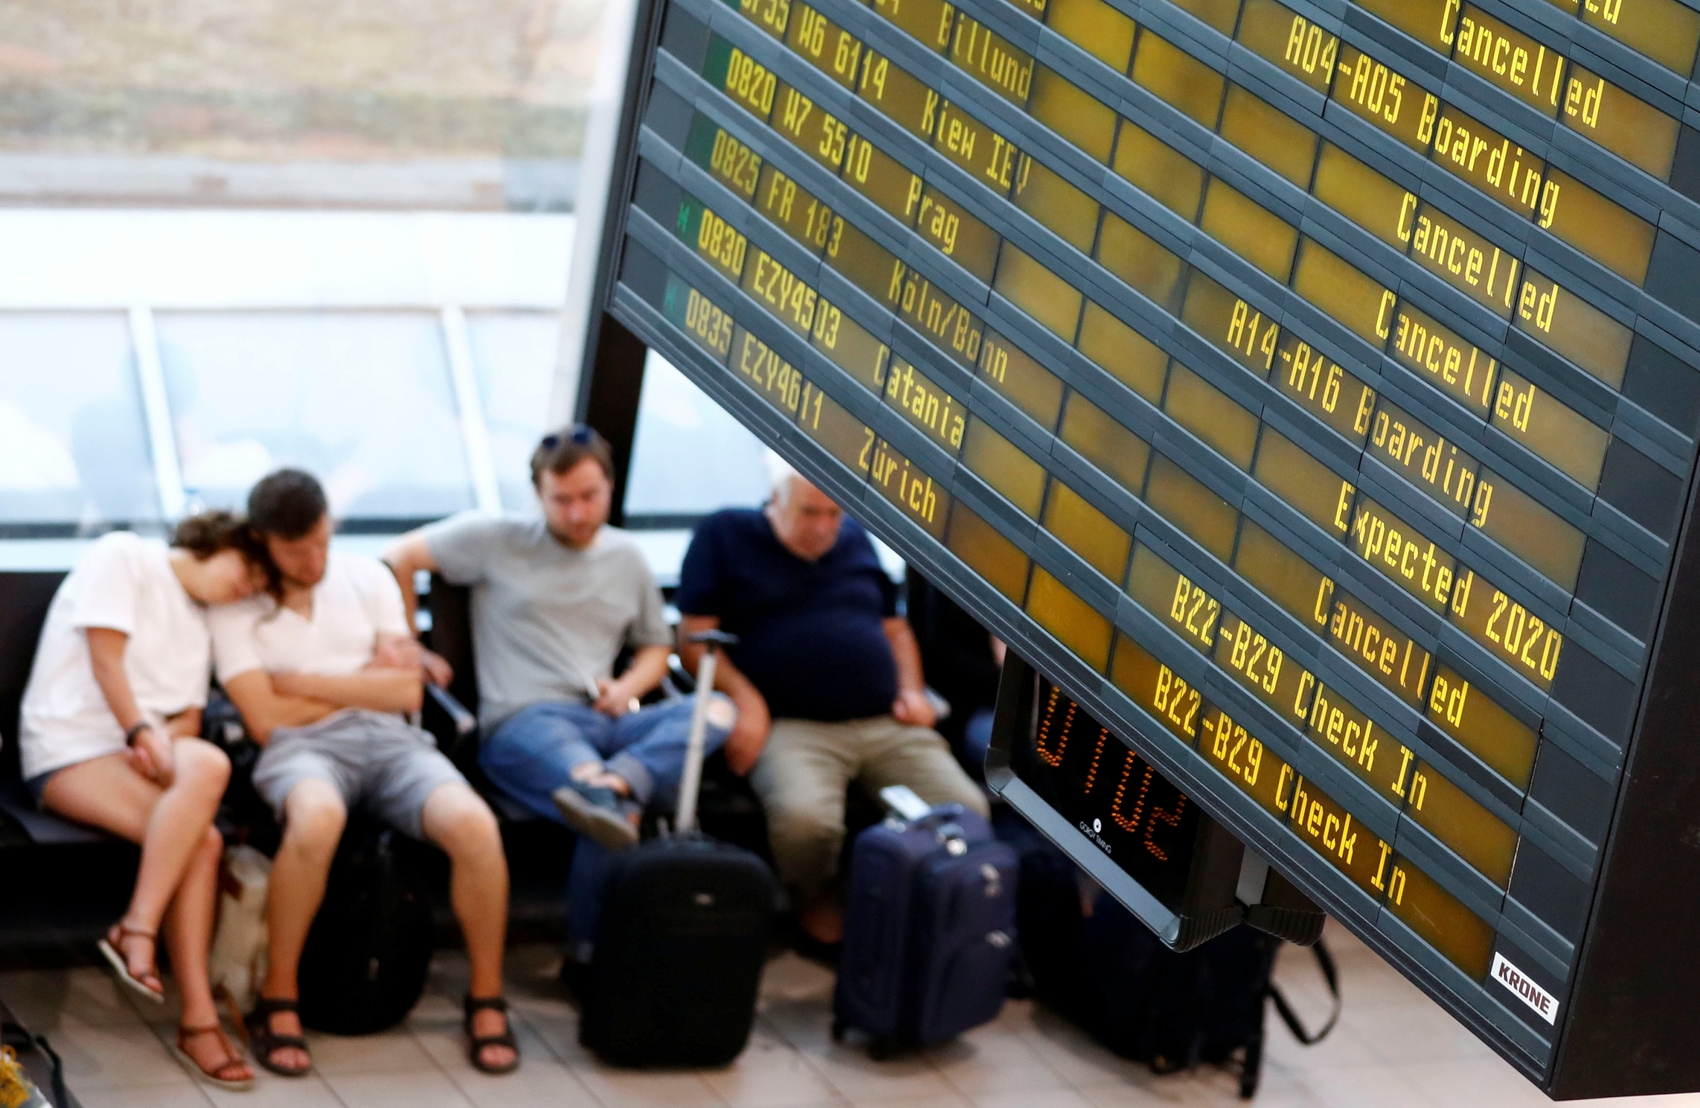 Туристы из Украины не смогут воспользоваться открытием авиасообщения с ЕС 15 июня